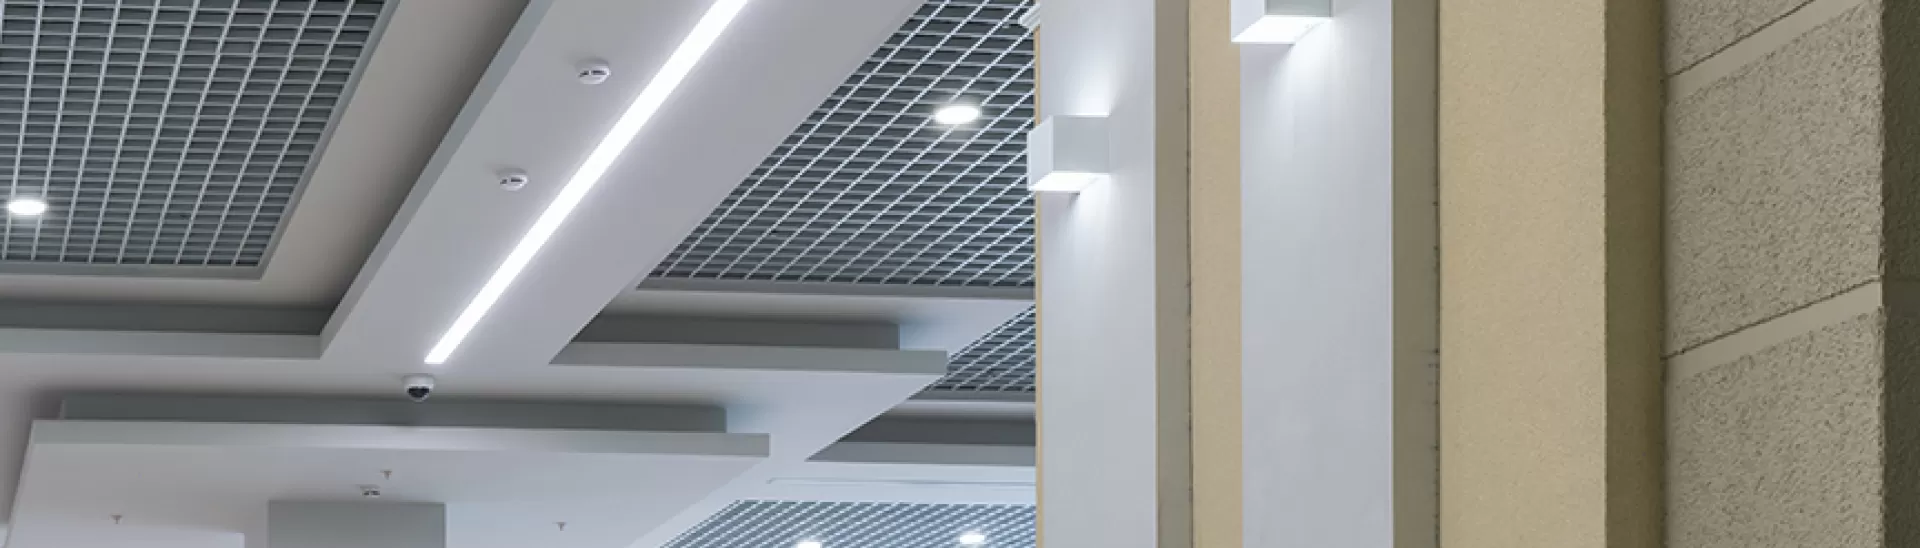 Gypsum False Ceiling - A Creative Solution for Your Interior Design 